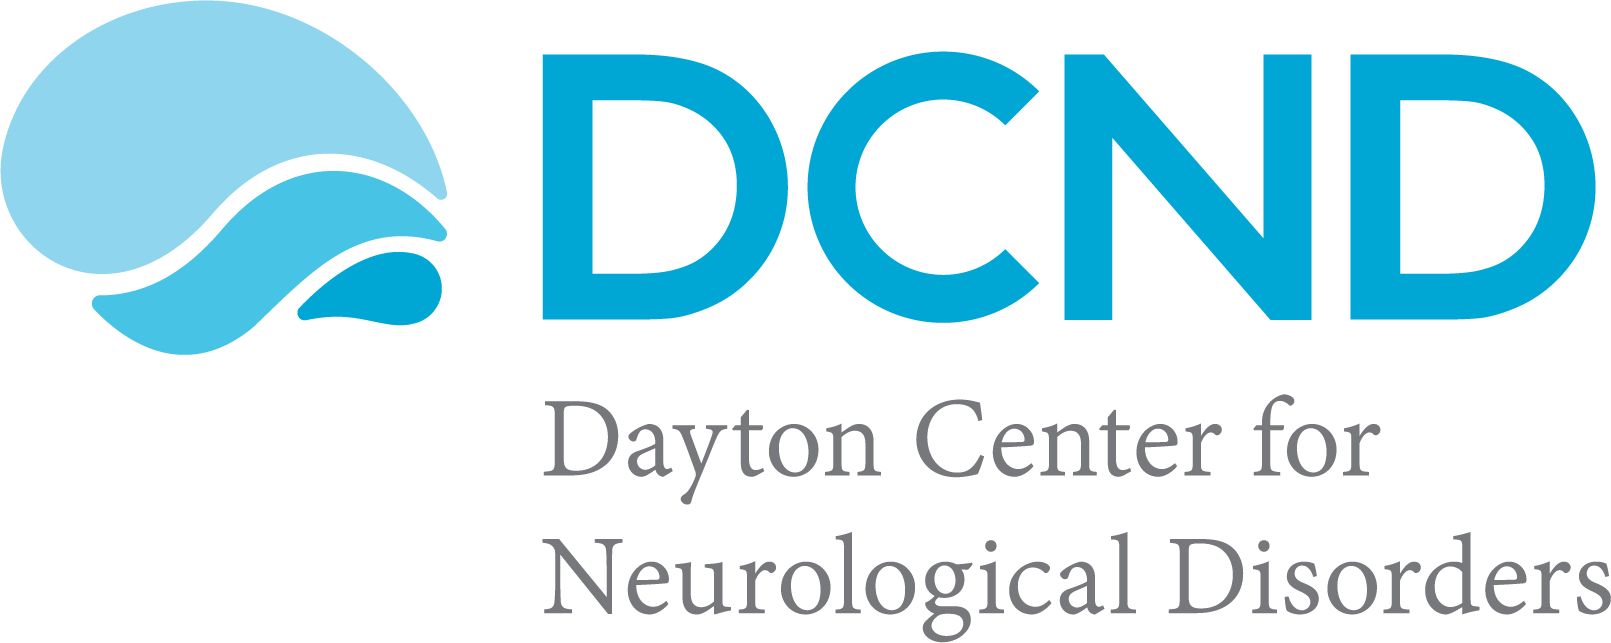 Dayton Center for Neurological Disorders